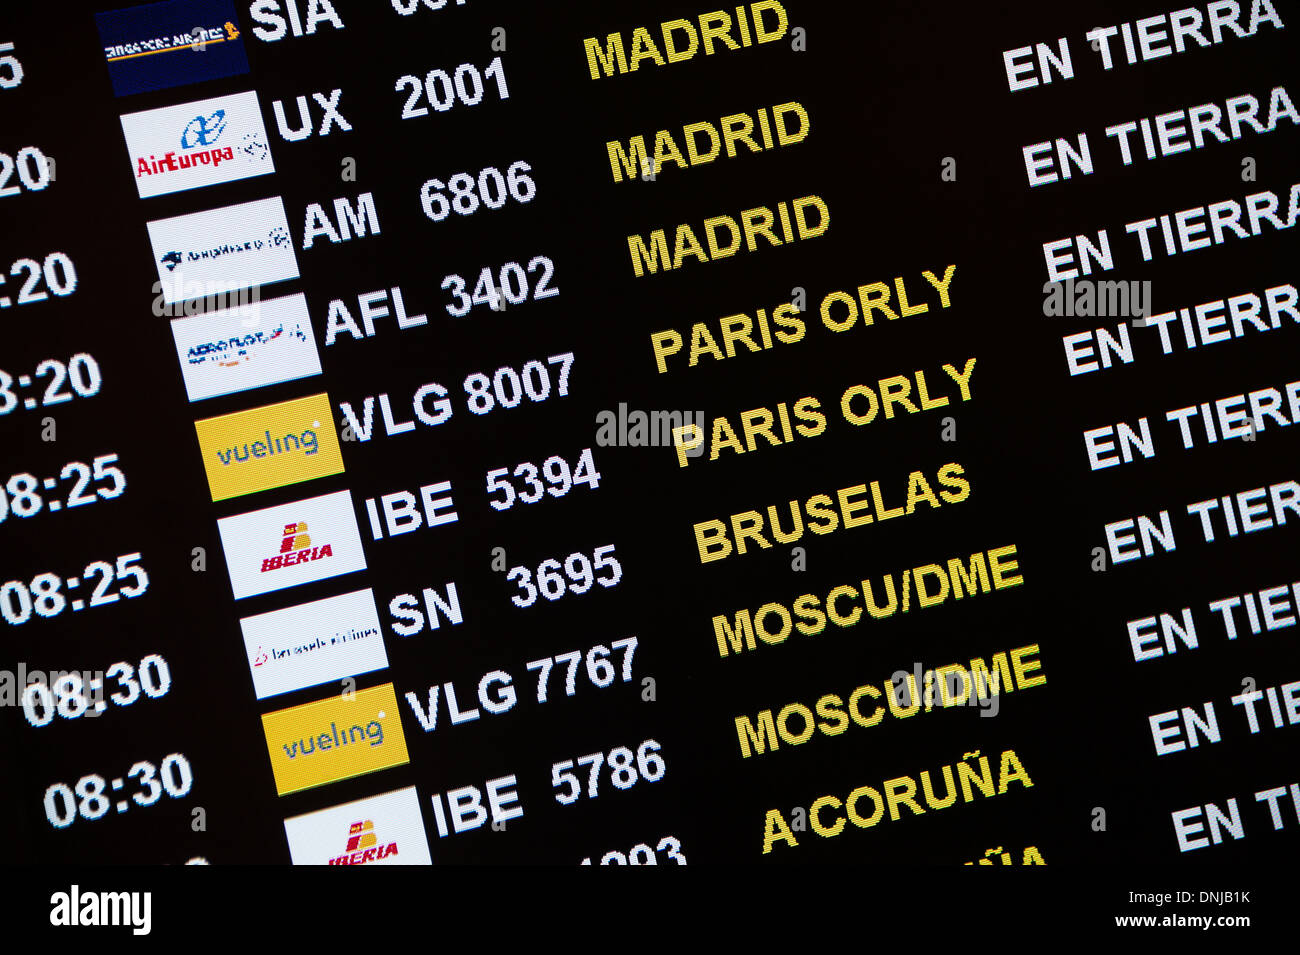 Mostrar el estado de los vuelos en la terminal del aeropuerto, Barcelona, España Foto de stock